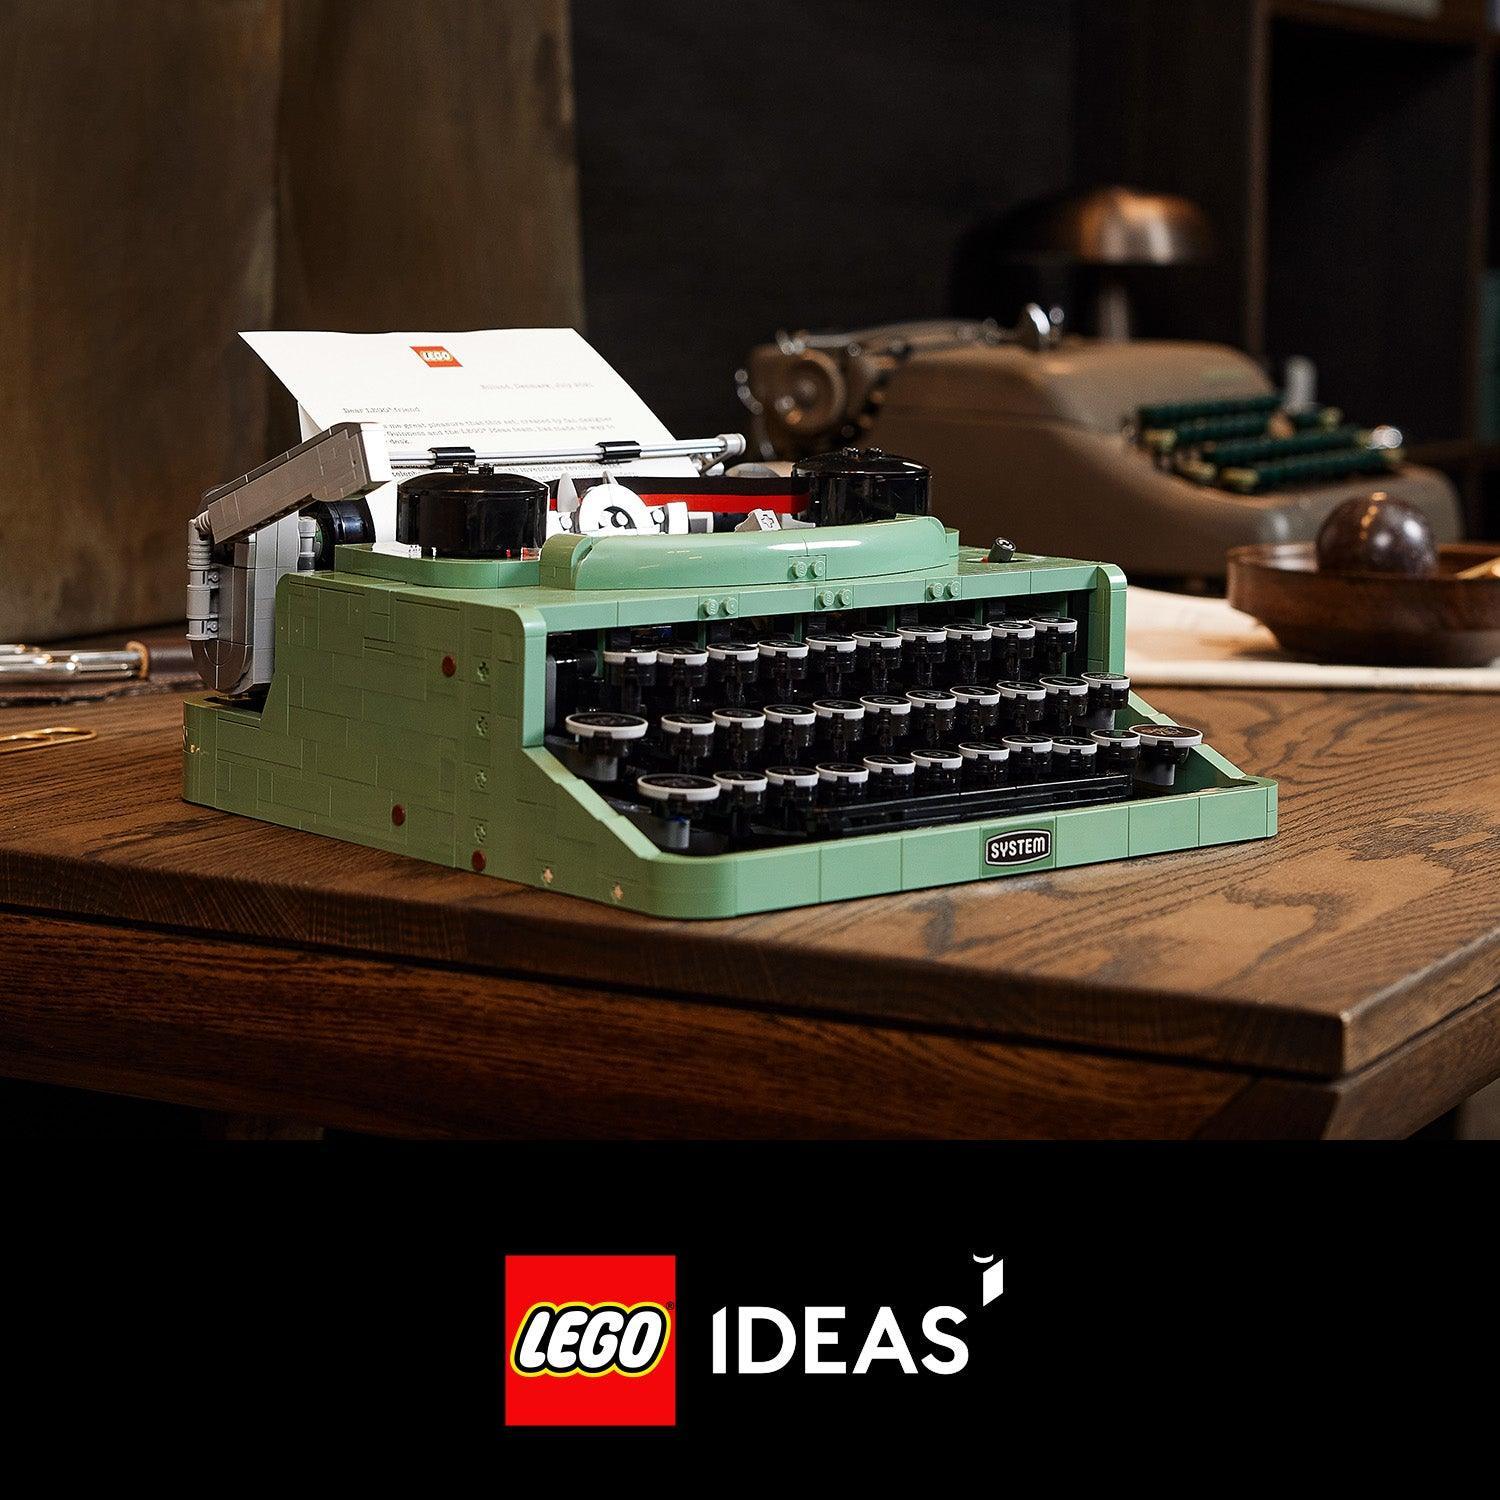 LEGO Type machine / Typewriter 21327 Ideas LEGO IDEAS @ 2TTOYS LEGO €. 234.99